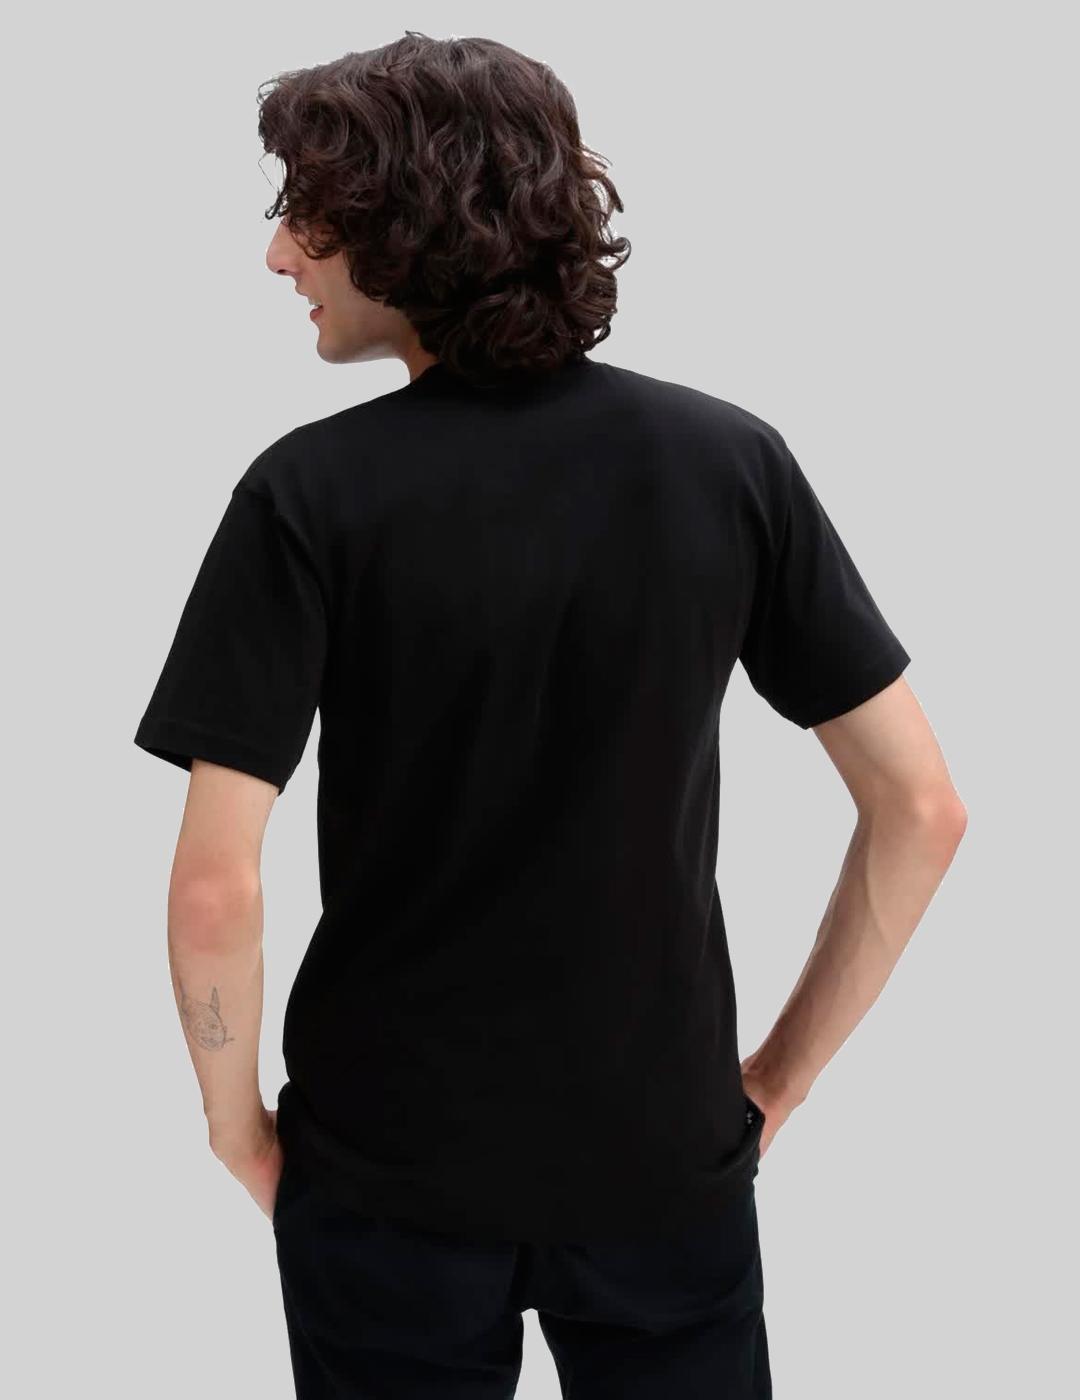 Camiseta VANS SKATE CLASSICS - Black